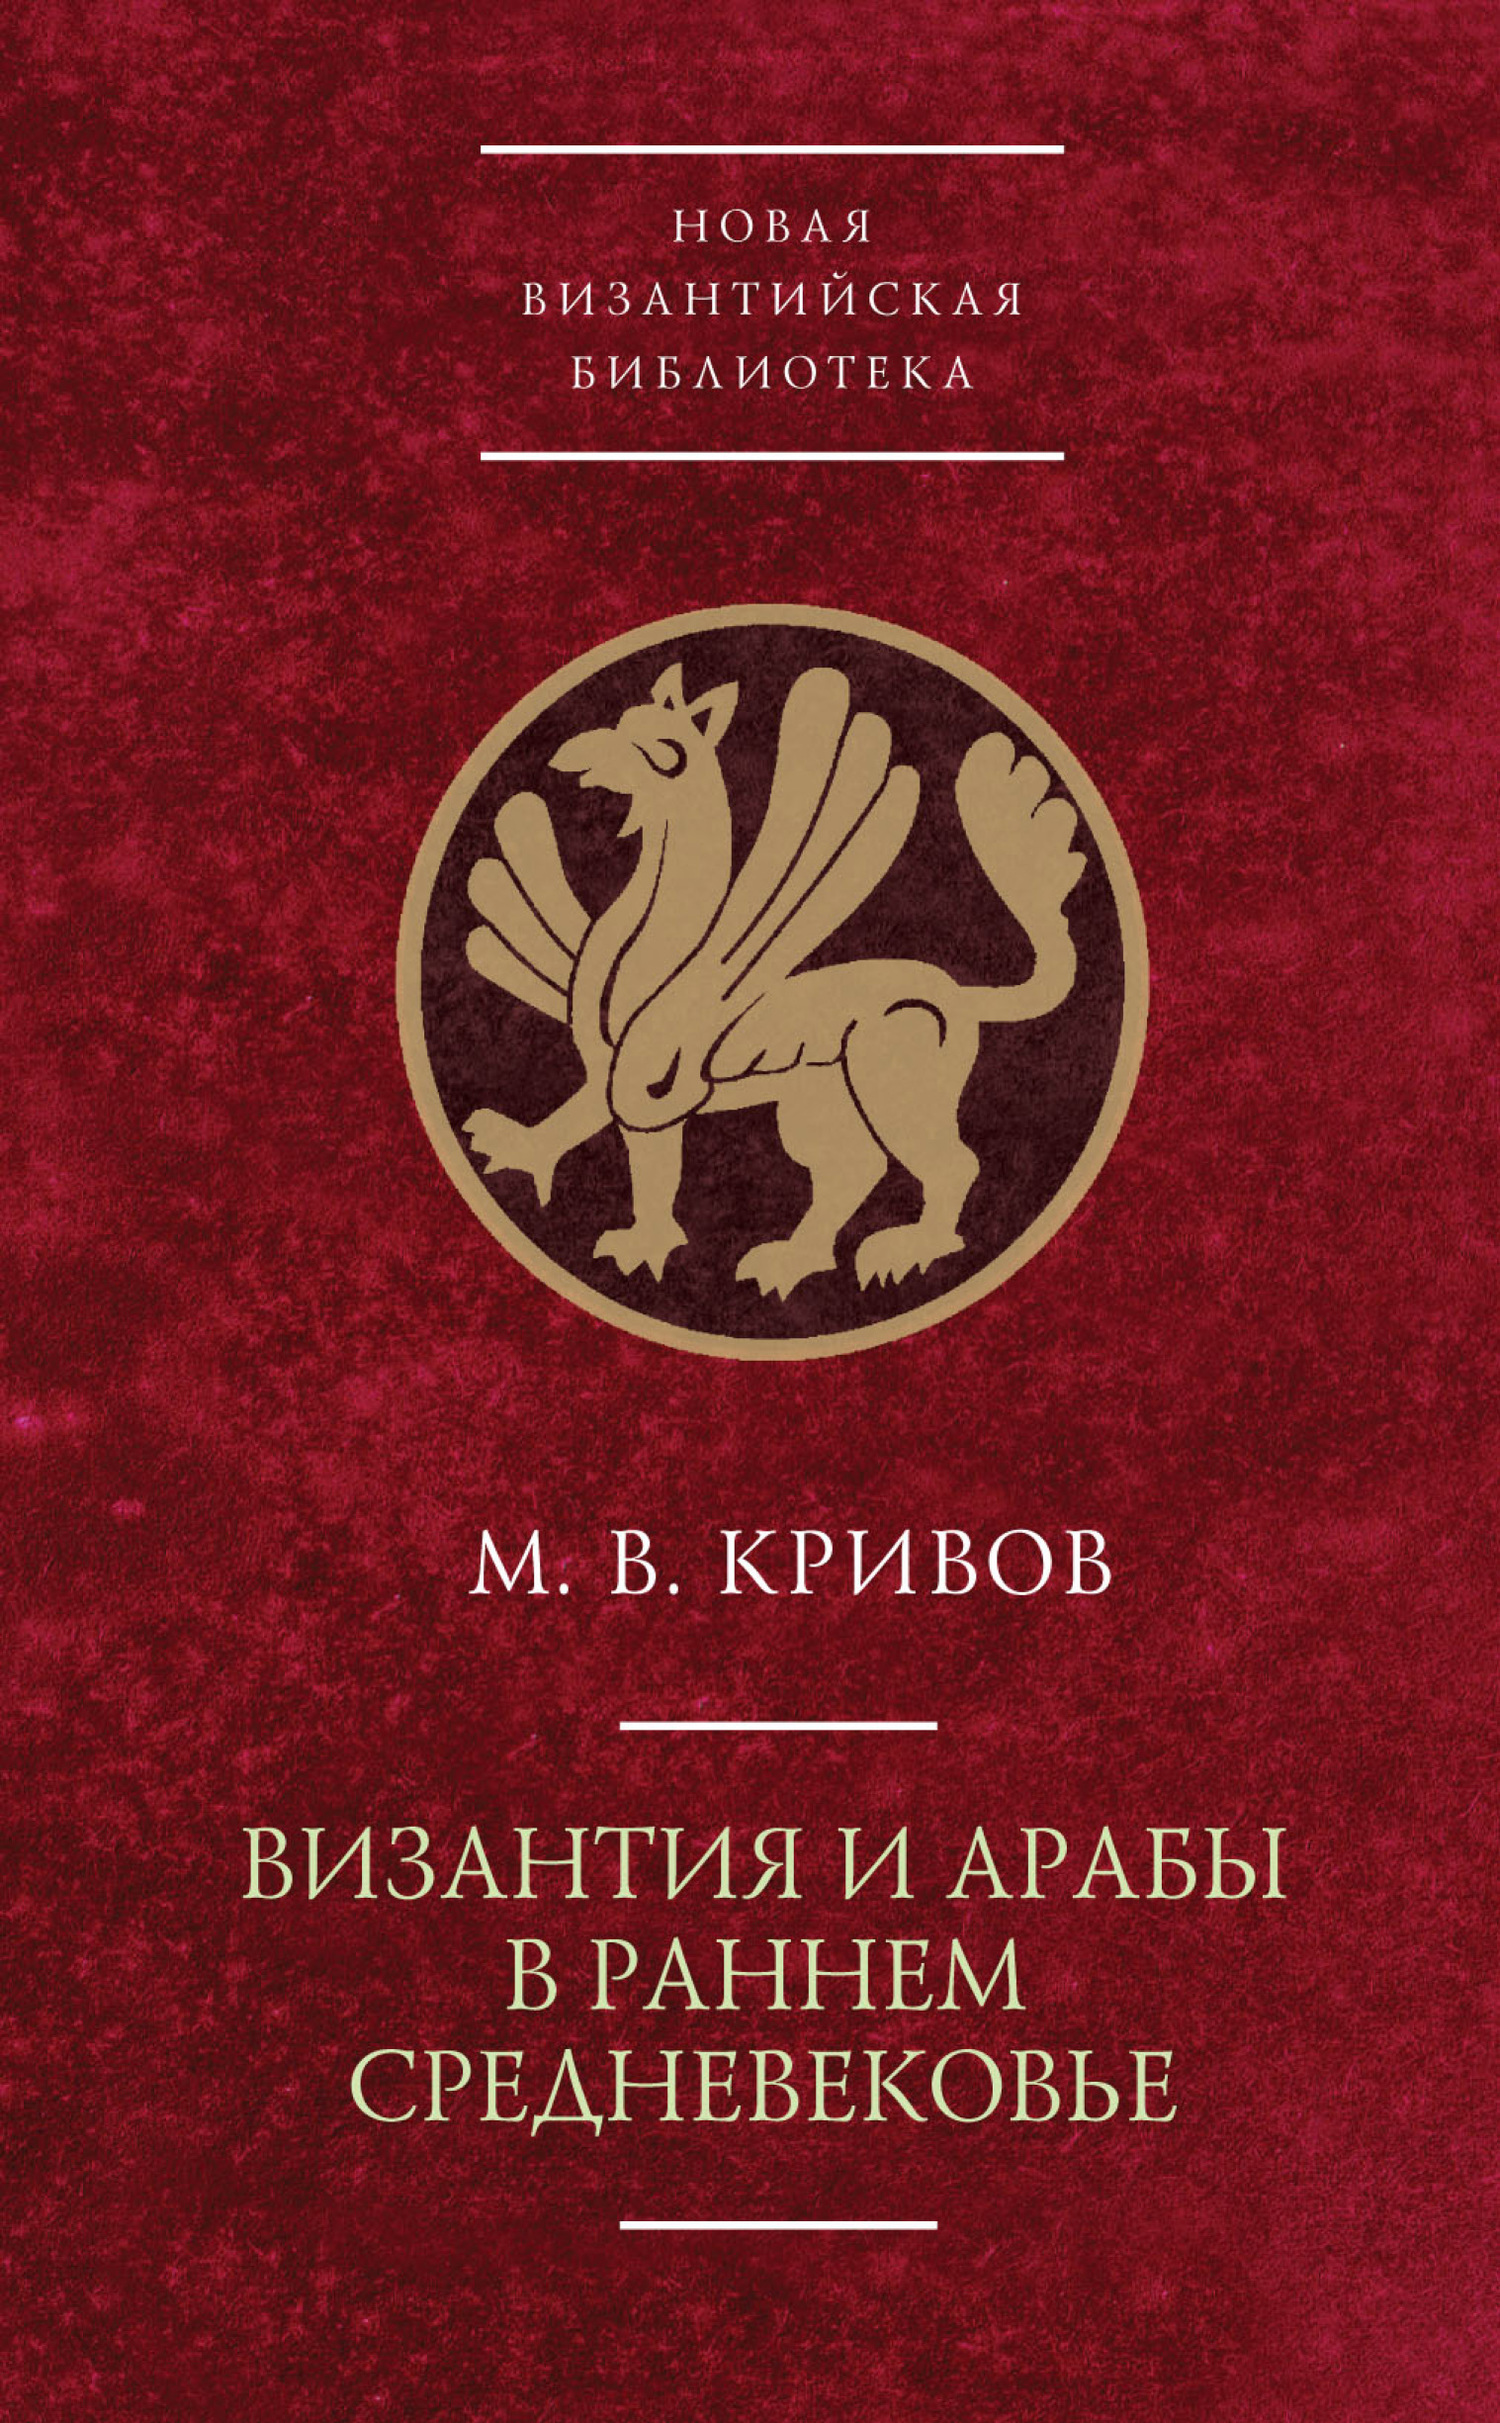 Византия и арабы в раннем Средневековье - Михаил Васильевич Кривов